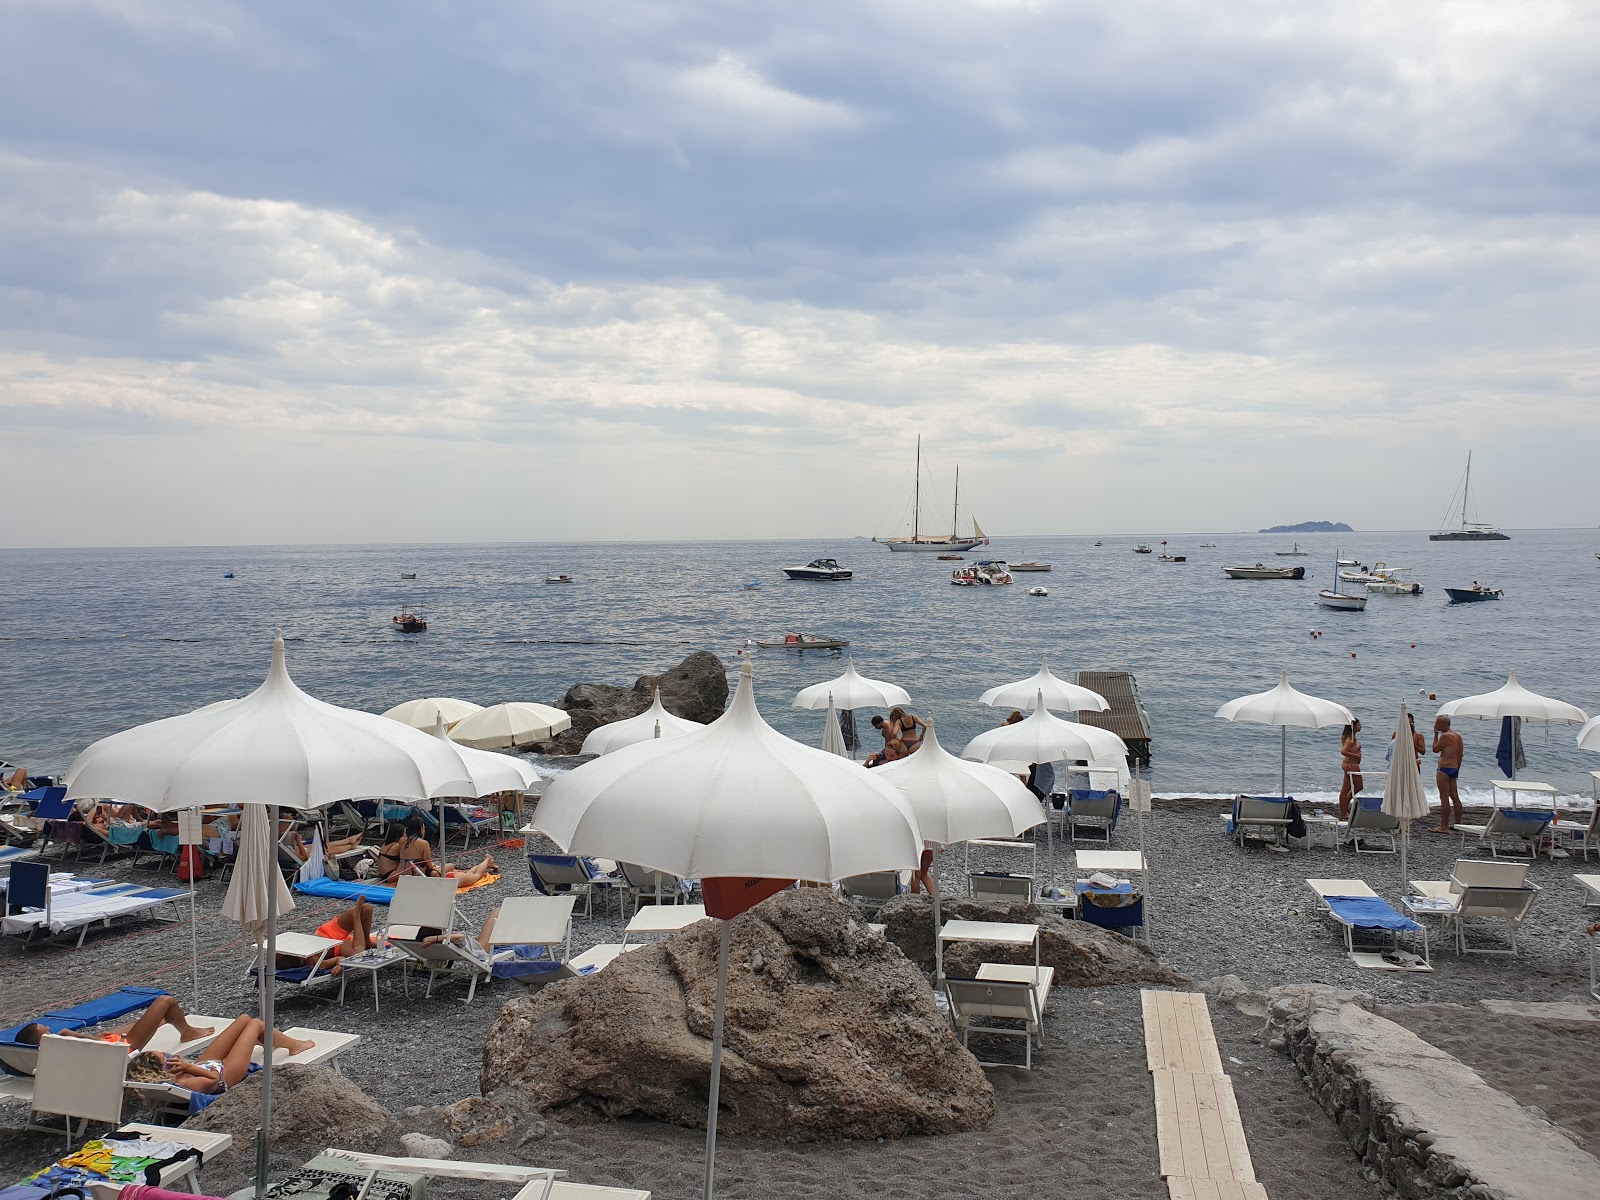 Photo of Spiaggia di via Laurito located in natural area